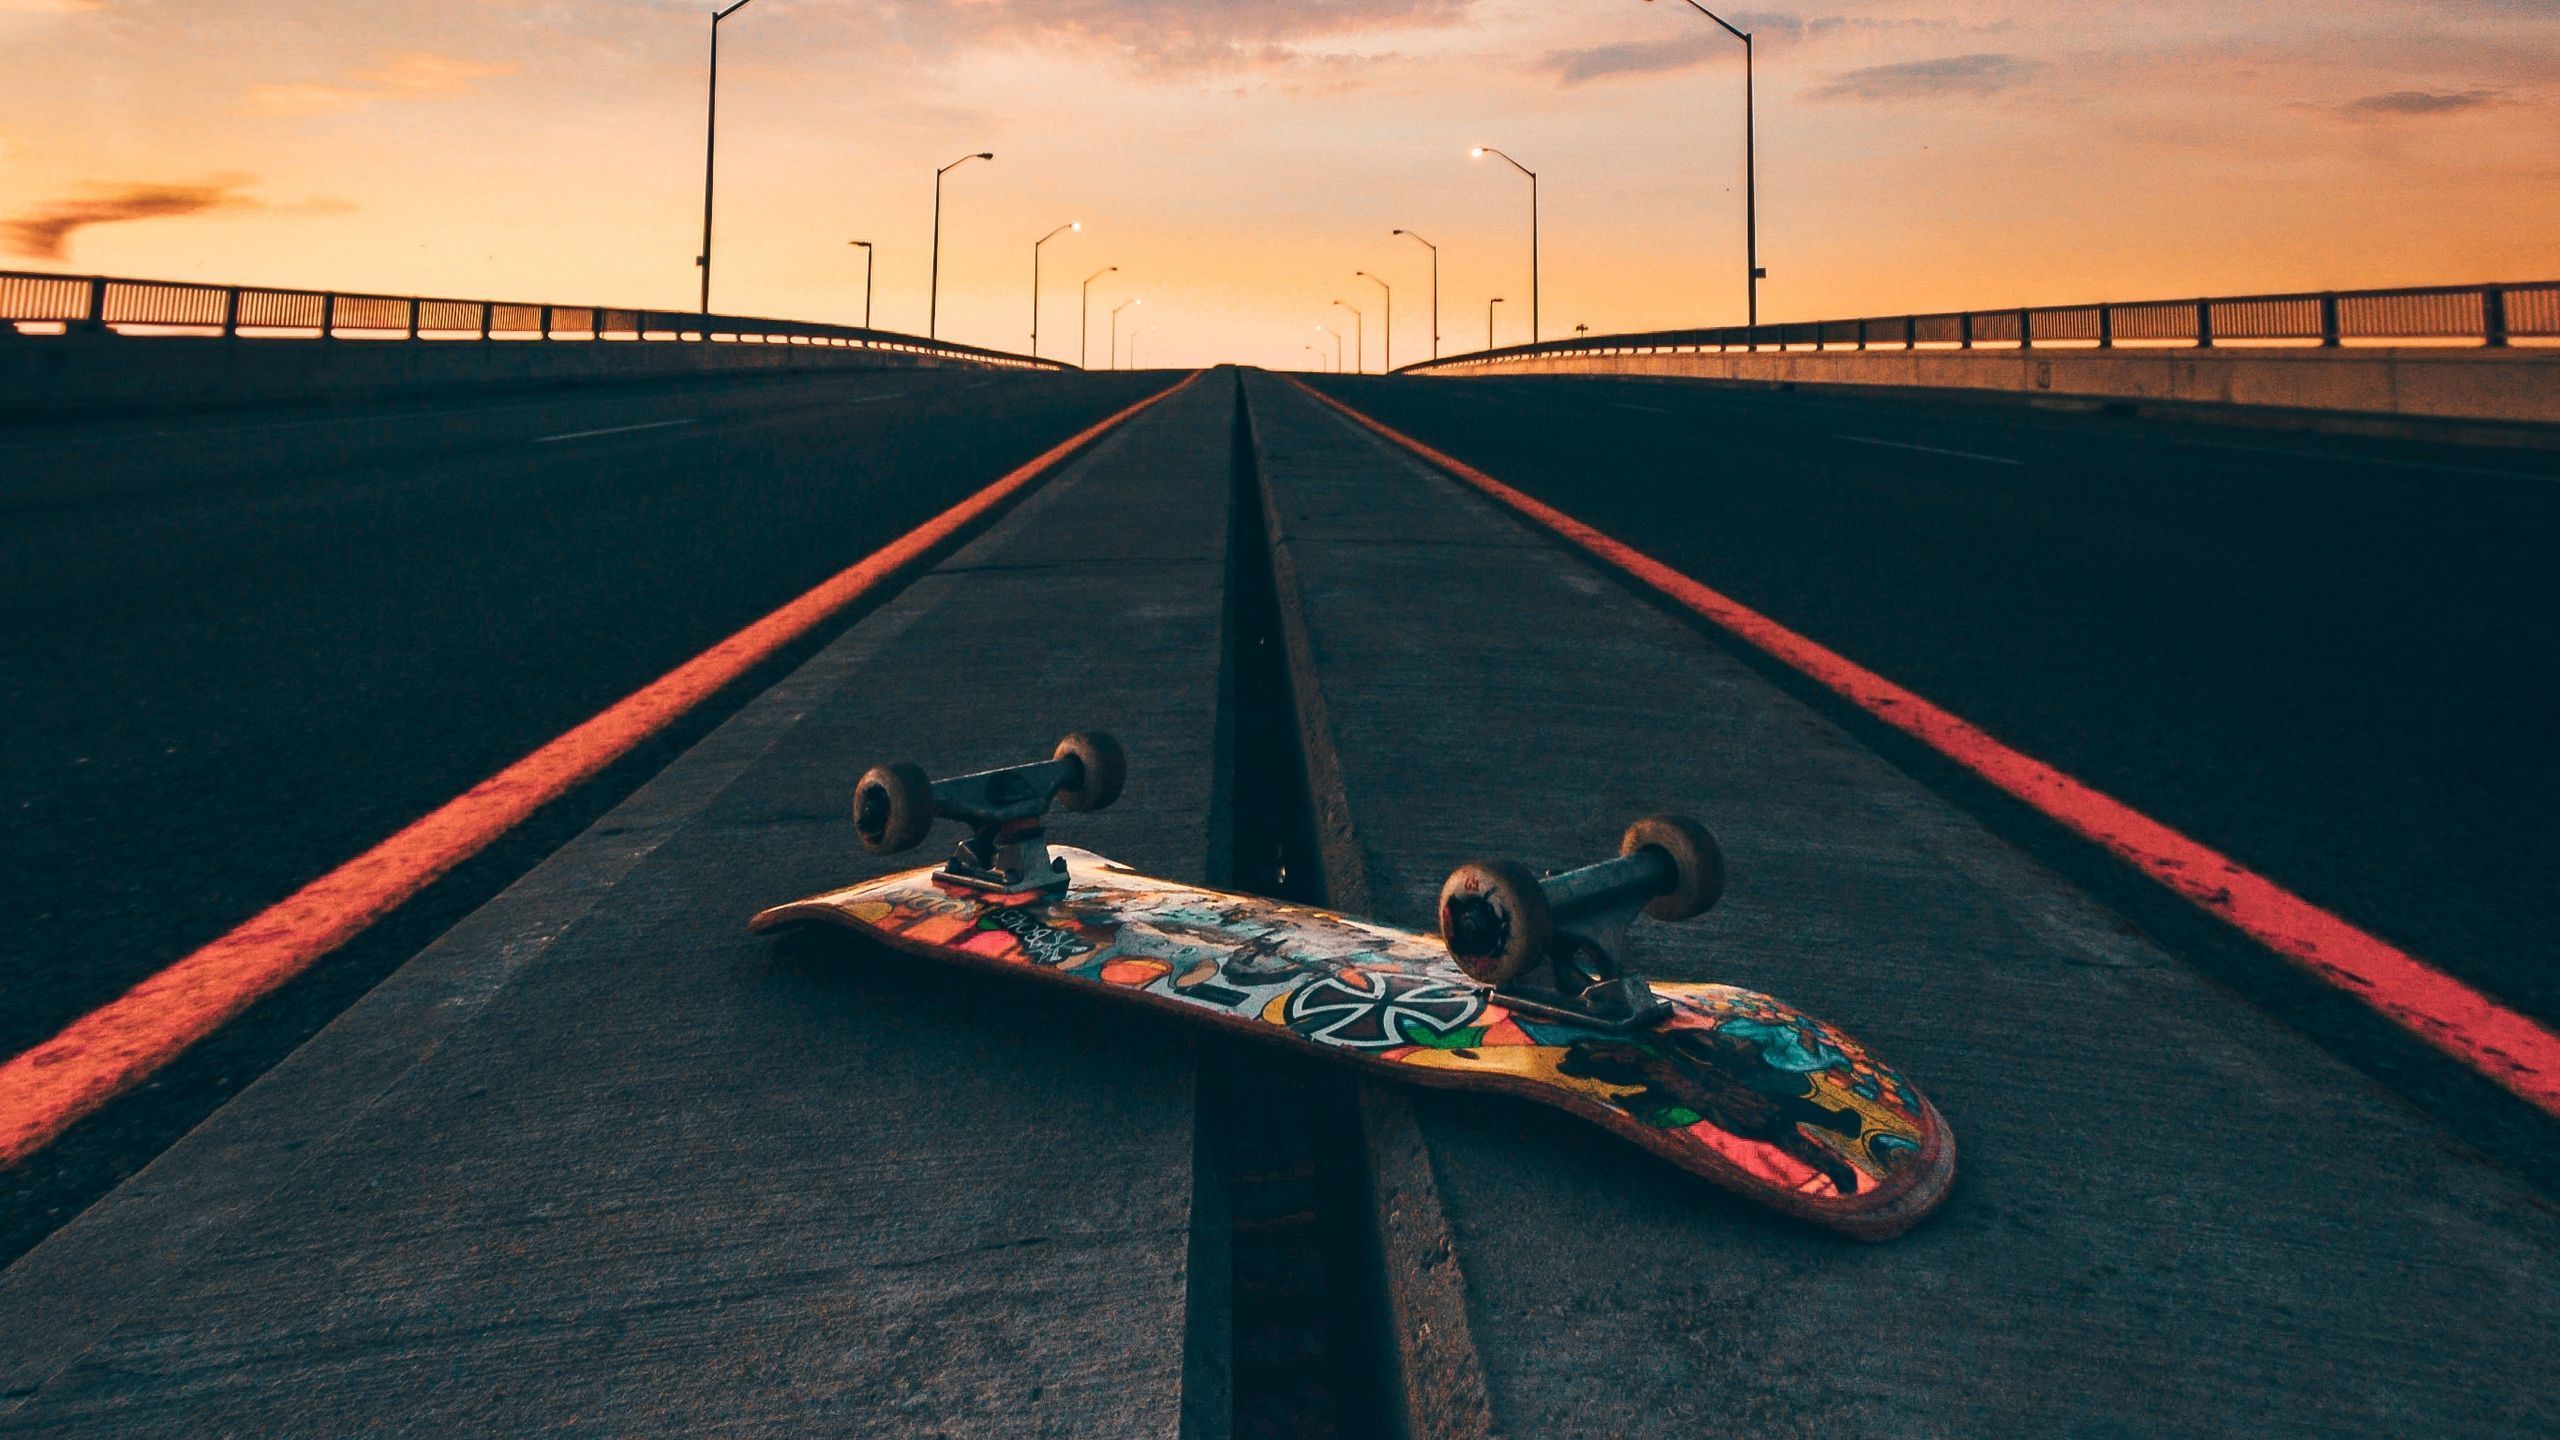 Skateboard on the road at sunset - Skate, skater